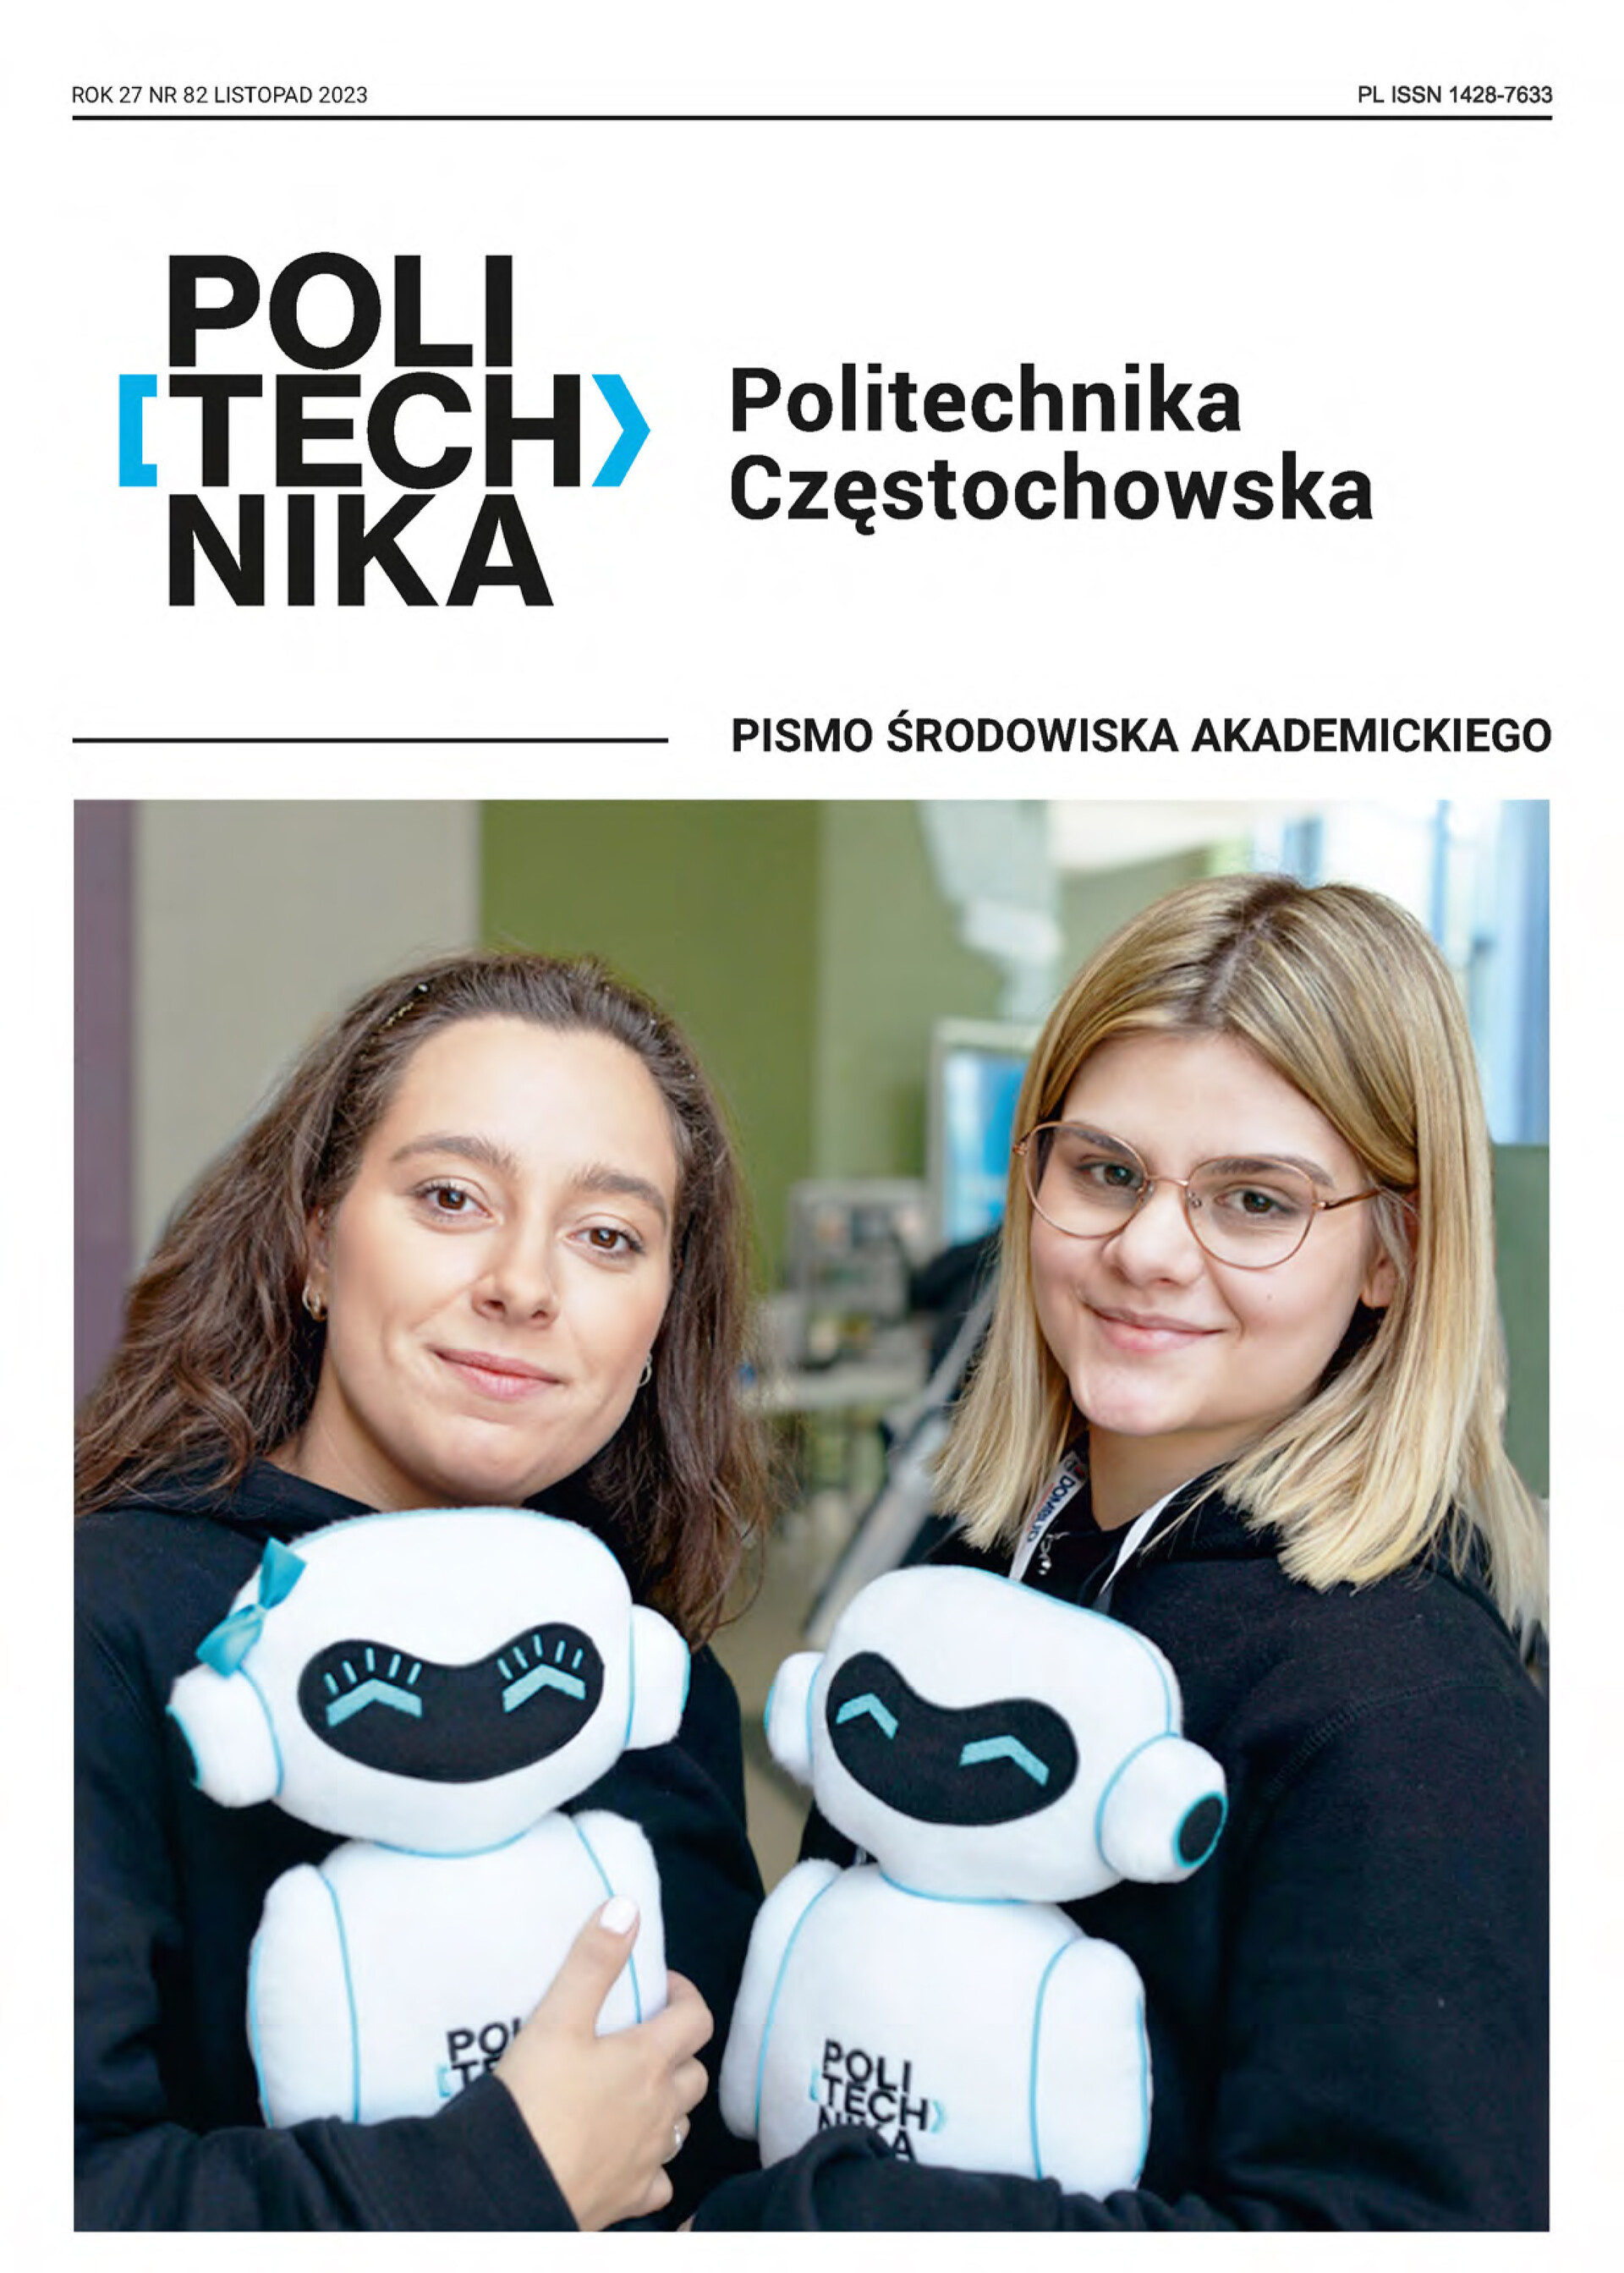 Okładka 82. numeru Czasopisma Politechnika Częstochowska - na tej okładce dwie uśmiechnięte dziewczyny z maskotkami PCz - Poli i Techem